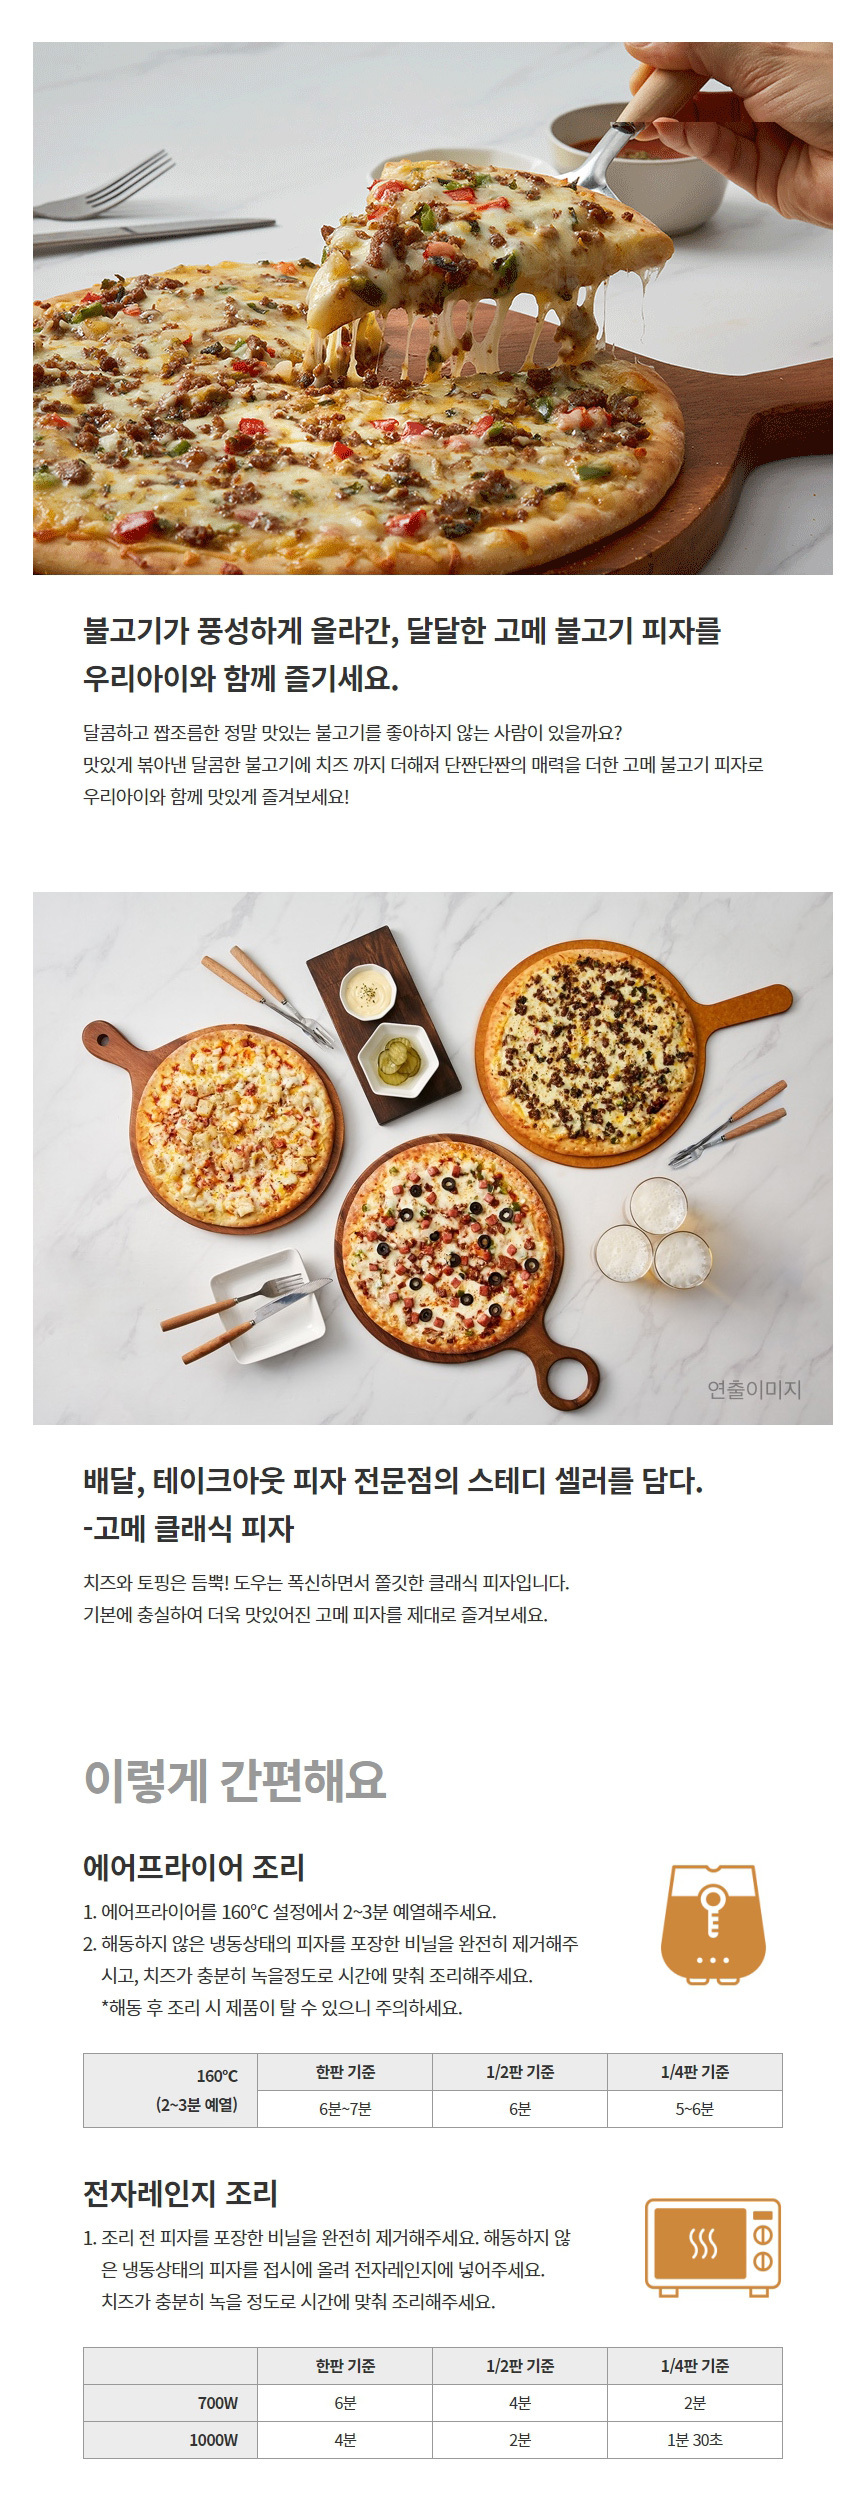 韓國食品-[CJ] 經典烤肉薄餅 405g